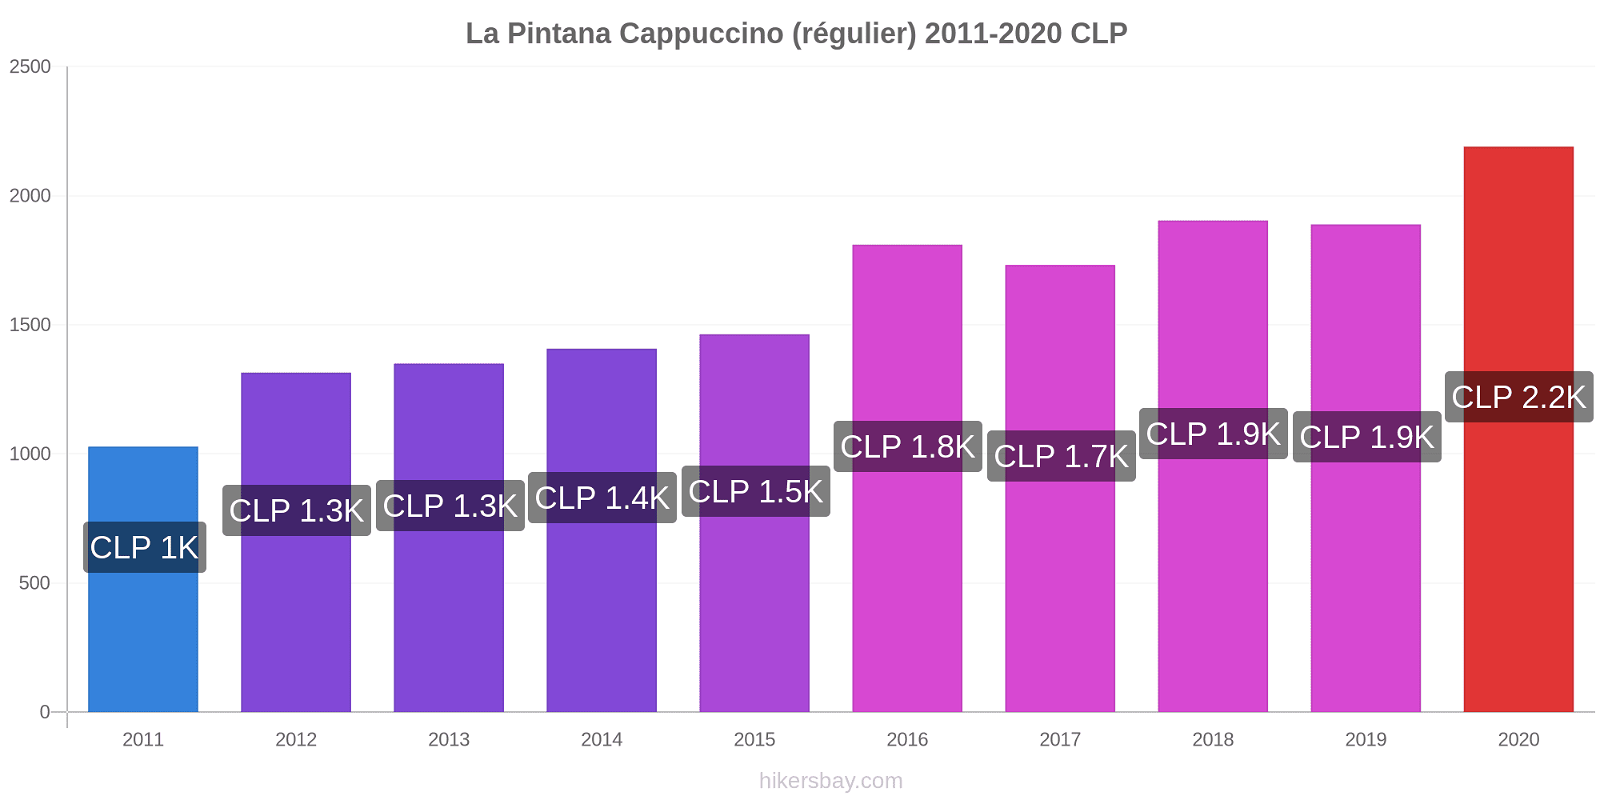 La Pintana changements de prix Cappuccino (régulier) hikersbay.com